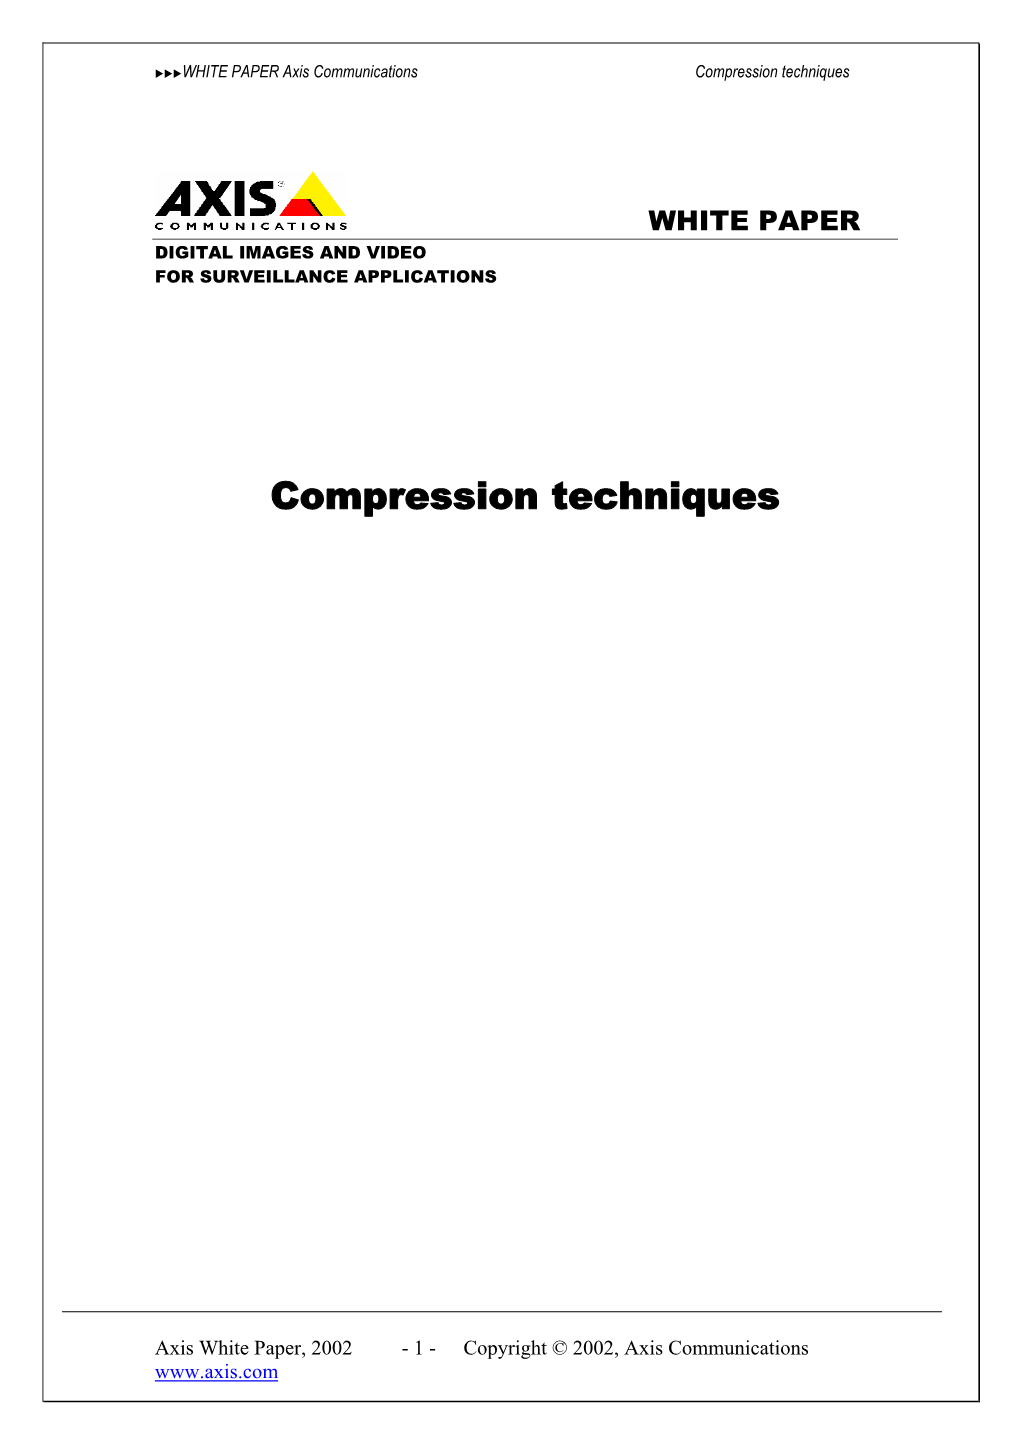 Video Compression White Paper 2002